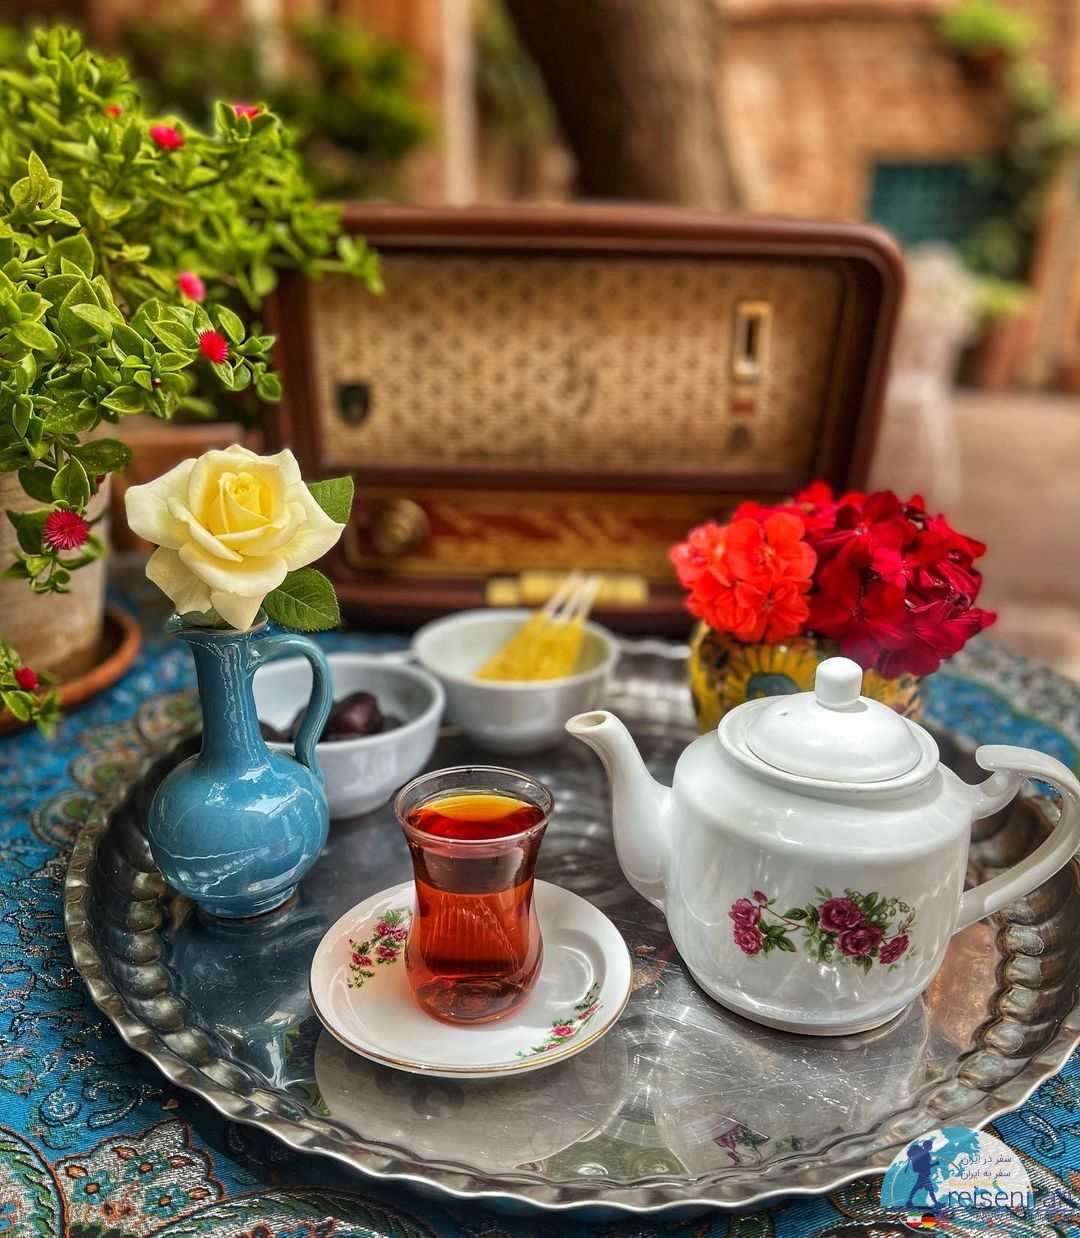 لذت نوشیدن چای در بوتیک هتل رزاز تهران